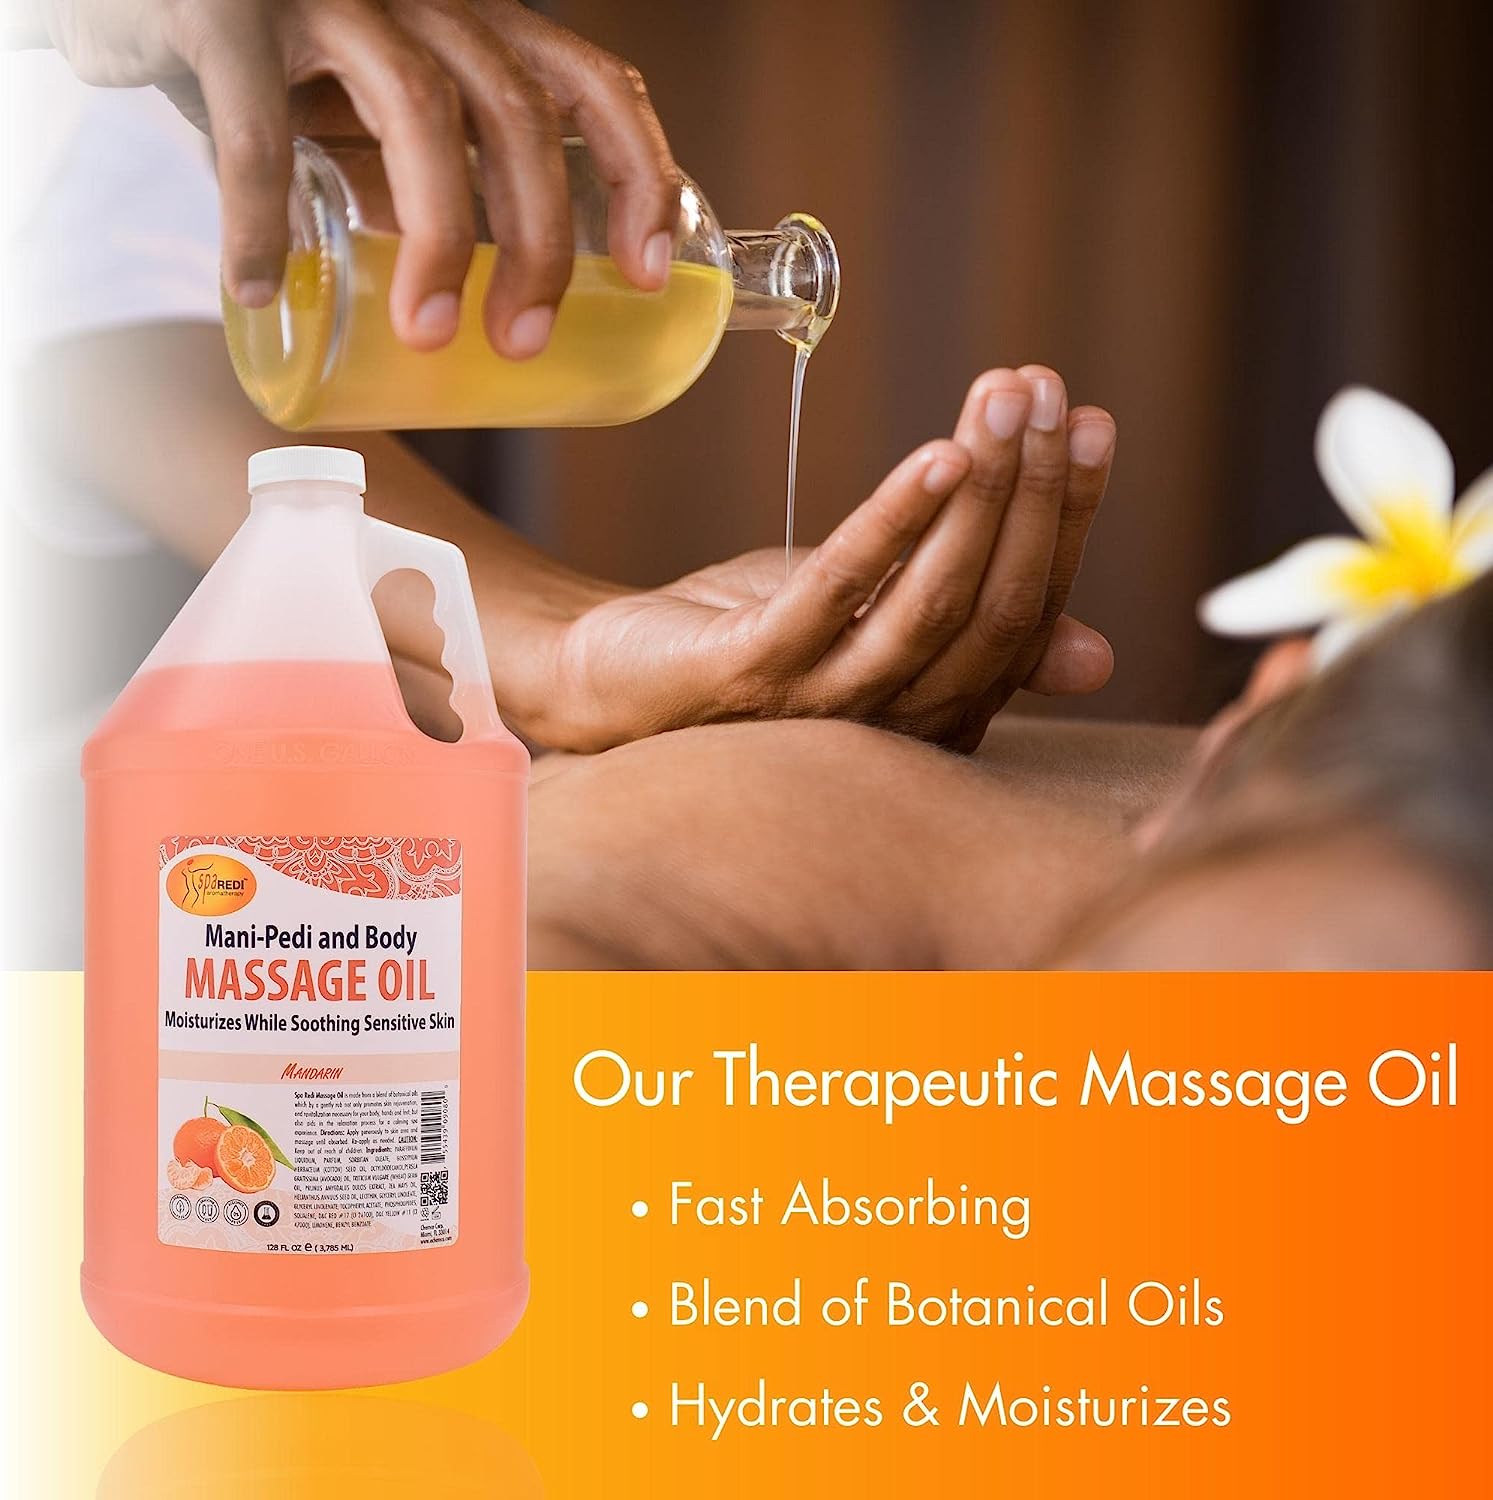 Massage Oil - Mandarin 1 Gallon by Spa Redi